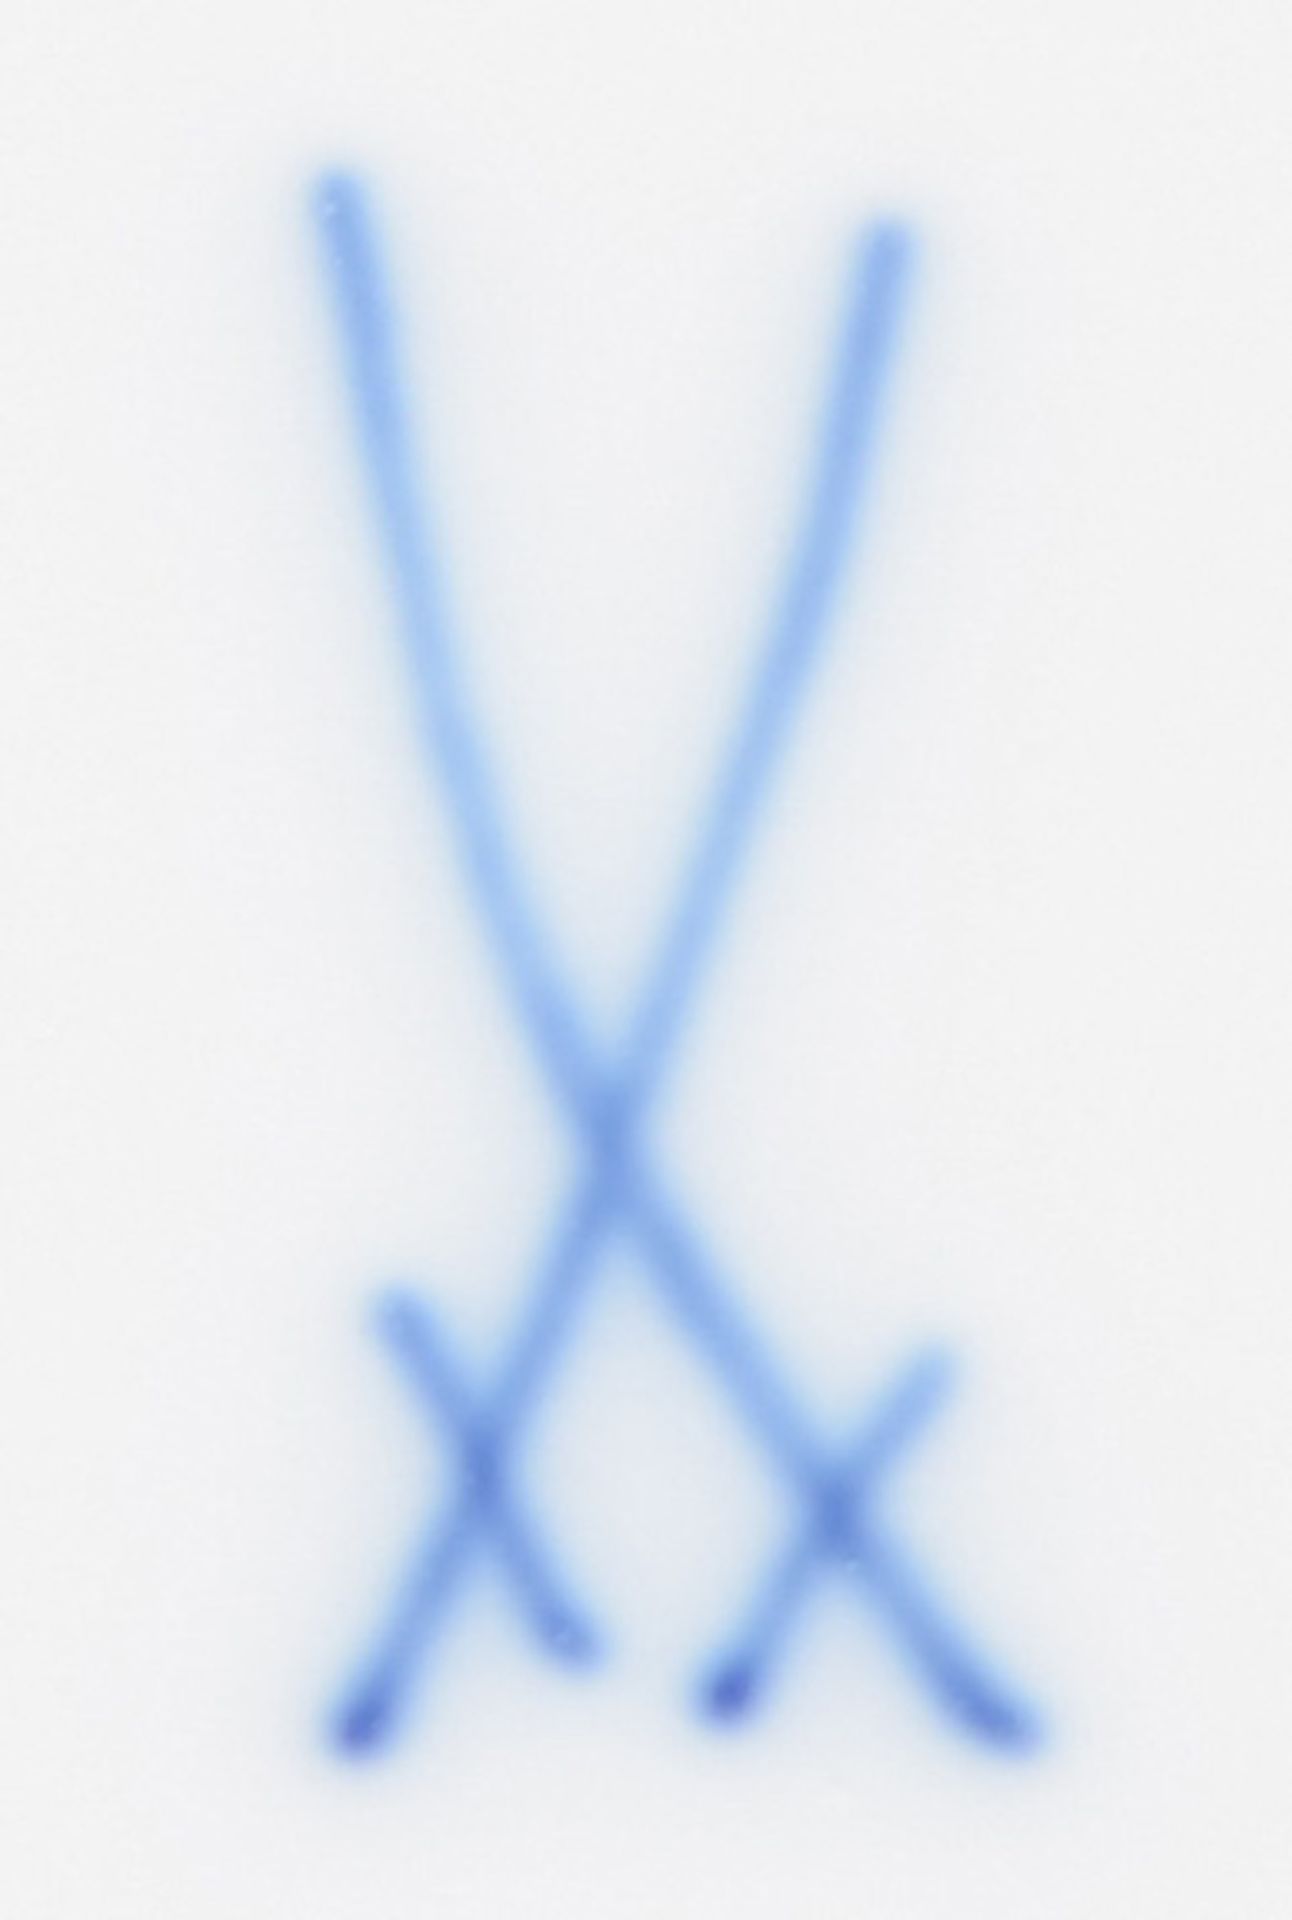 Ovale Platte. Meissen 20. Jh. Porzellan, bunt bemalt mit Blumen; am Boden unterglasurblaue Schwerter - Bild 2 aus 2